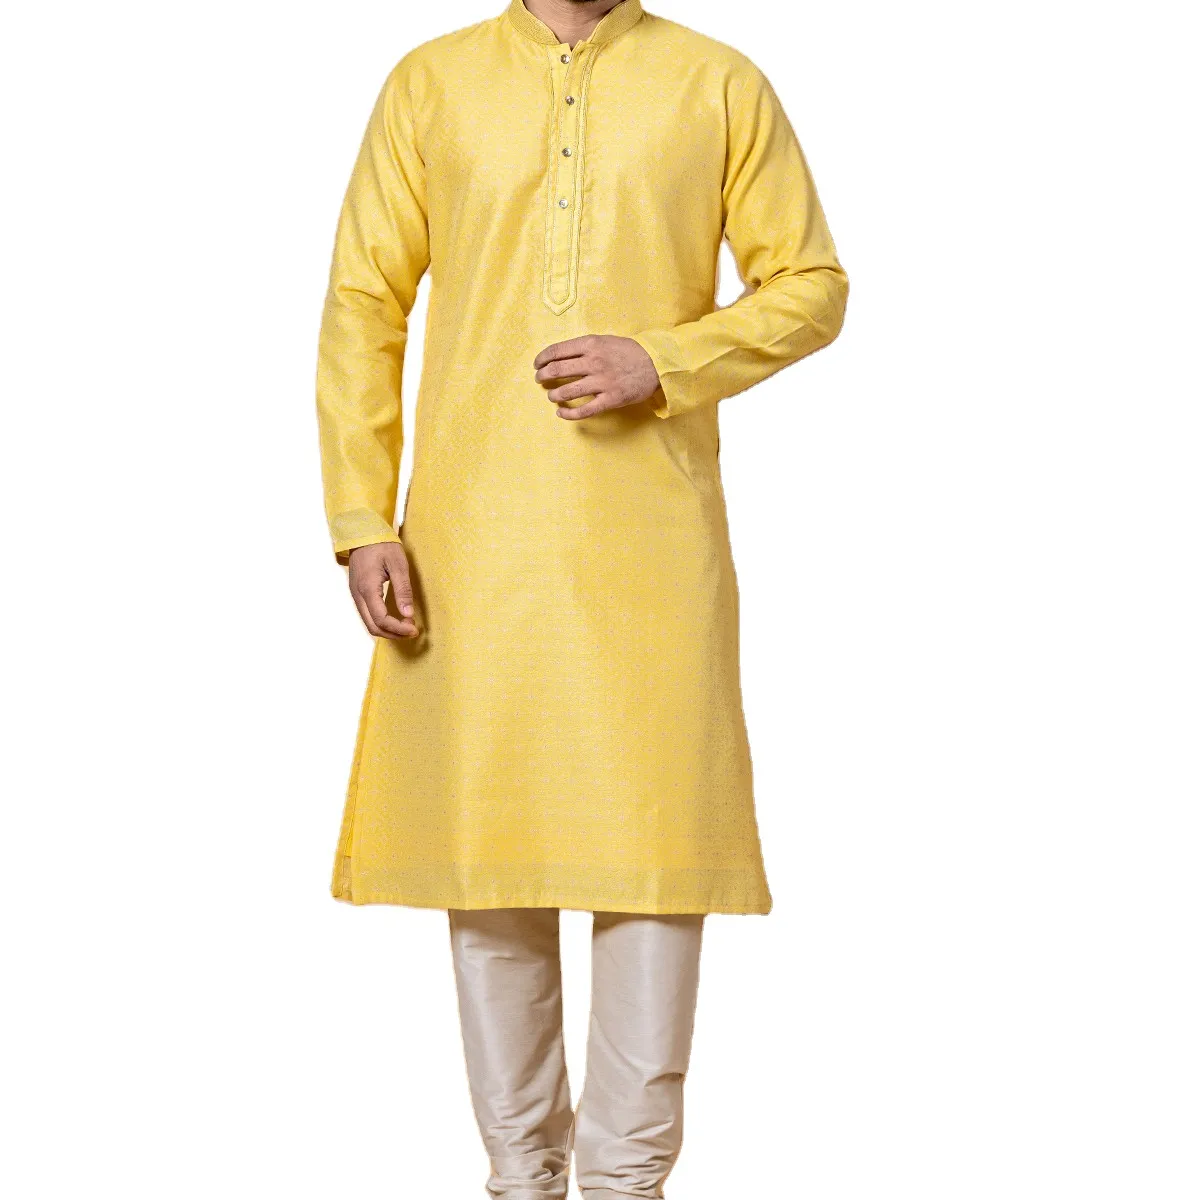 Tasarımcı pakistan Shalwar Kameez koleksiyonu toptan fabrika doğrudan tedarik müslüman erkek elbise % etnik giyim pamuk takım elbise